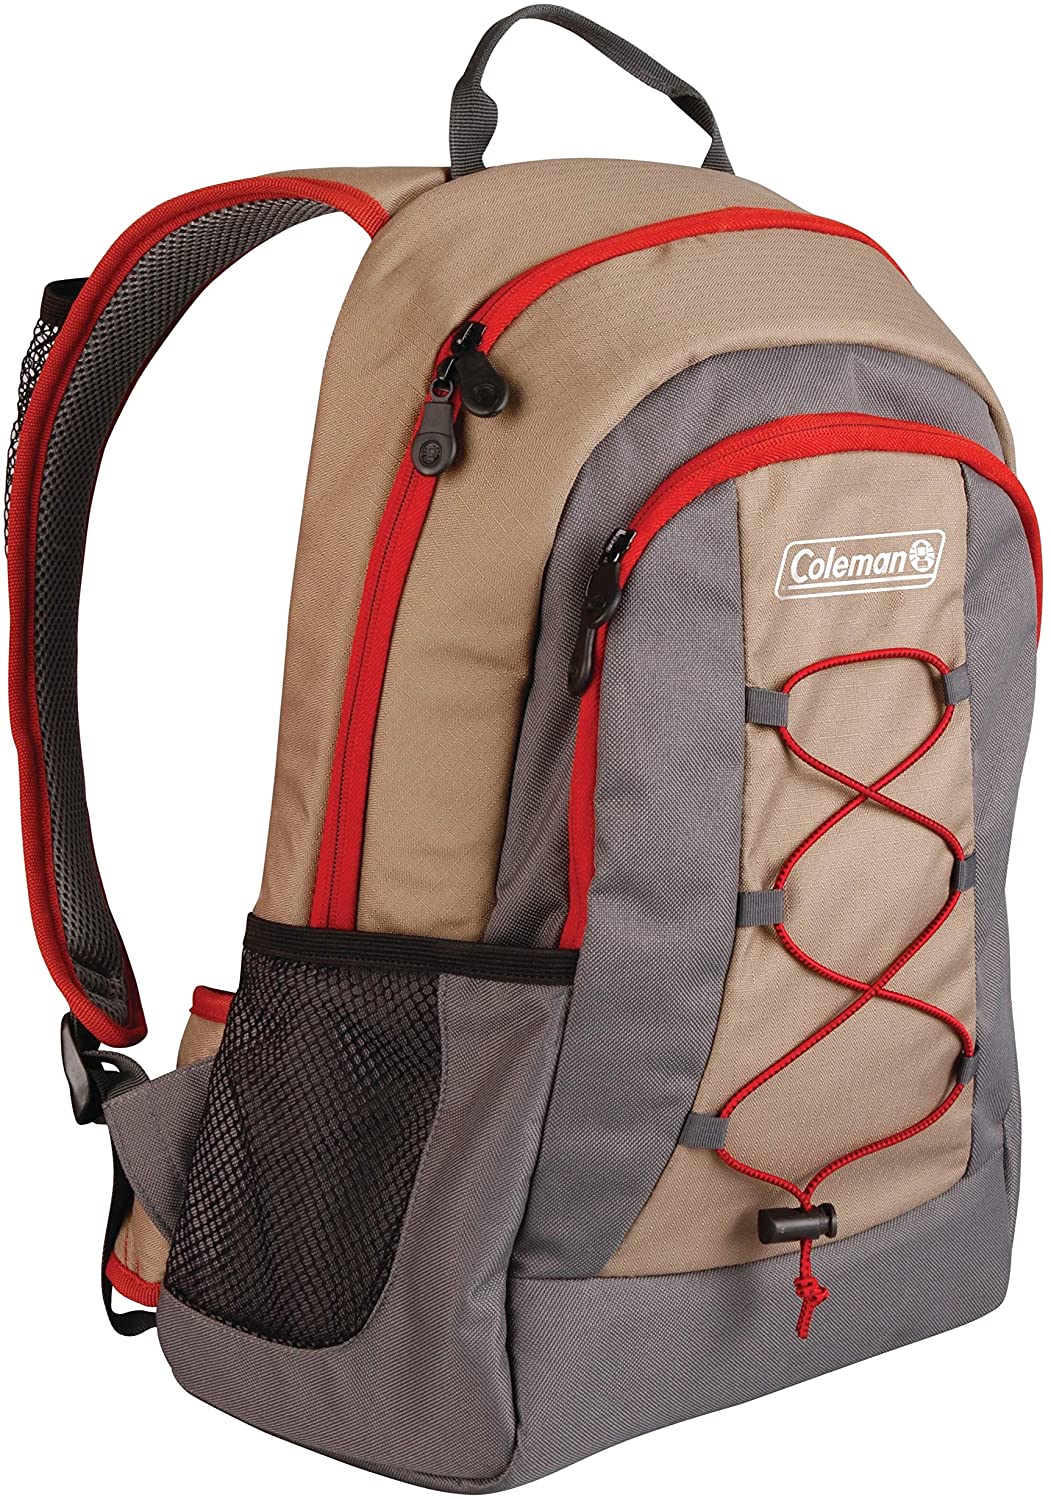 Coleman Extra Storage Adjustable Backpack Cooler